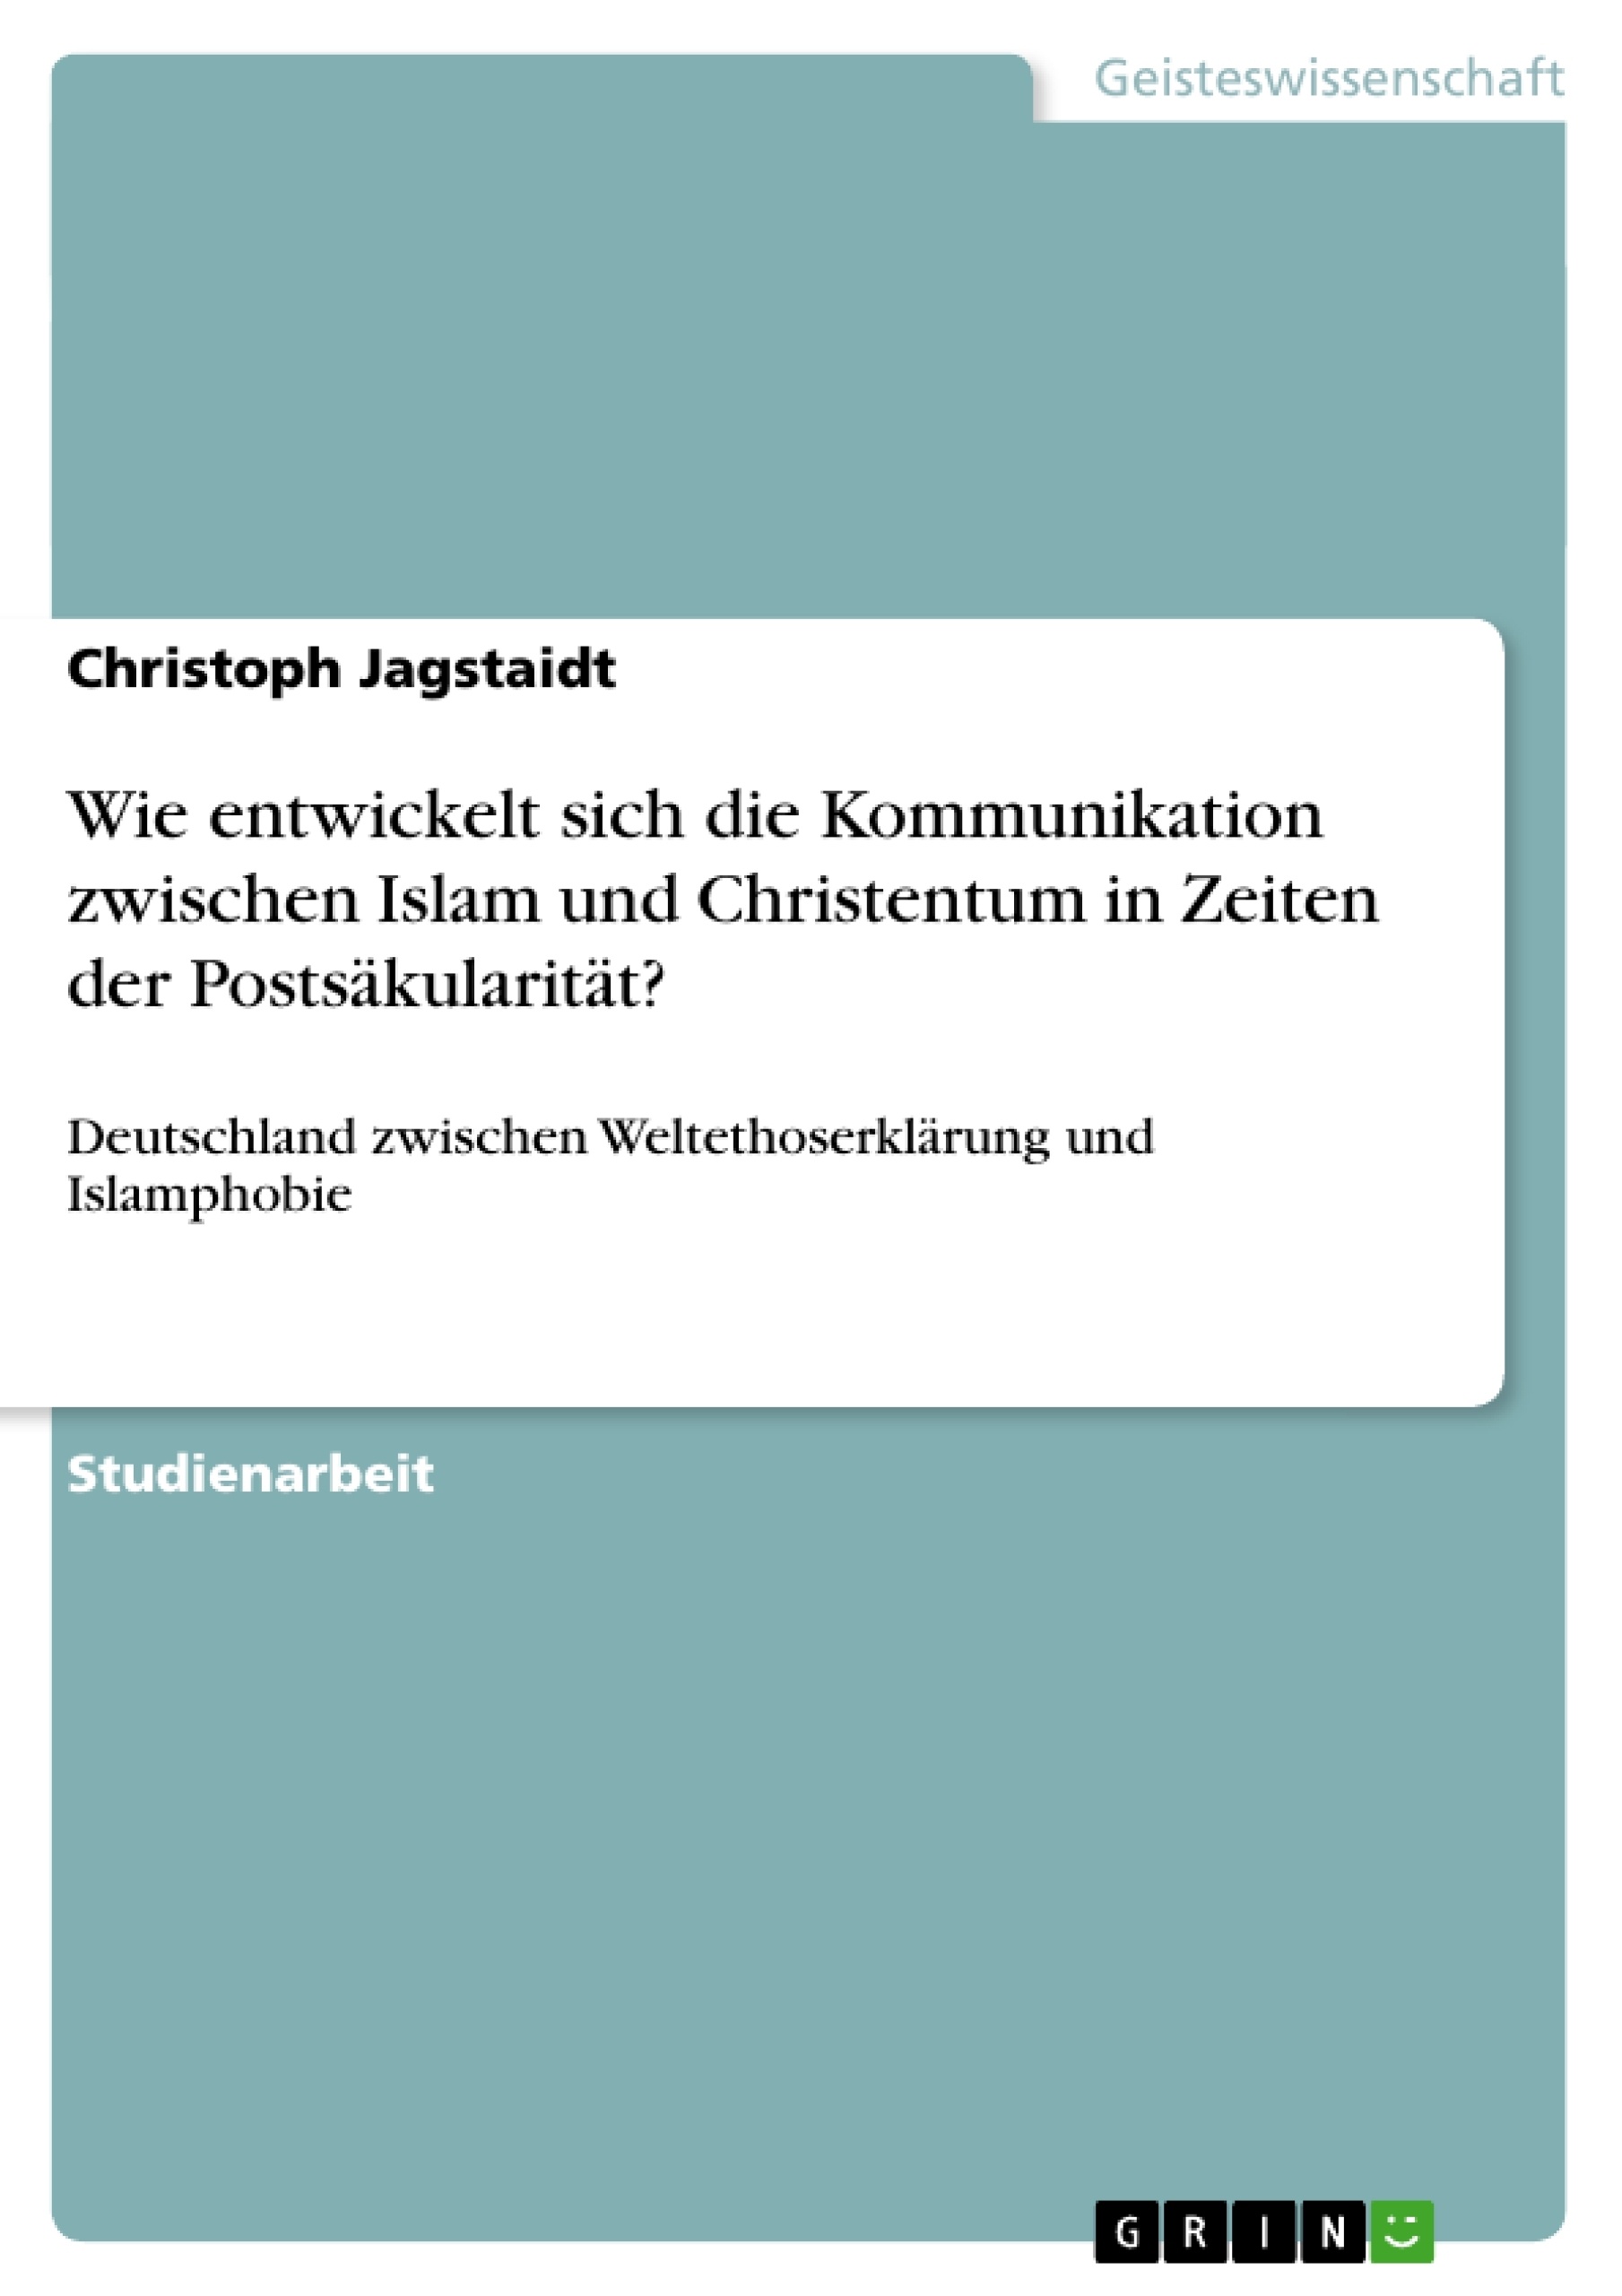 Title: Wie entwickelt sich die Kommunikation zwischen Islam und Christentum in Zeiten der Postsäkularität?